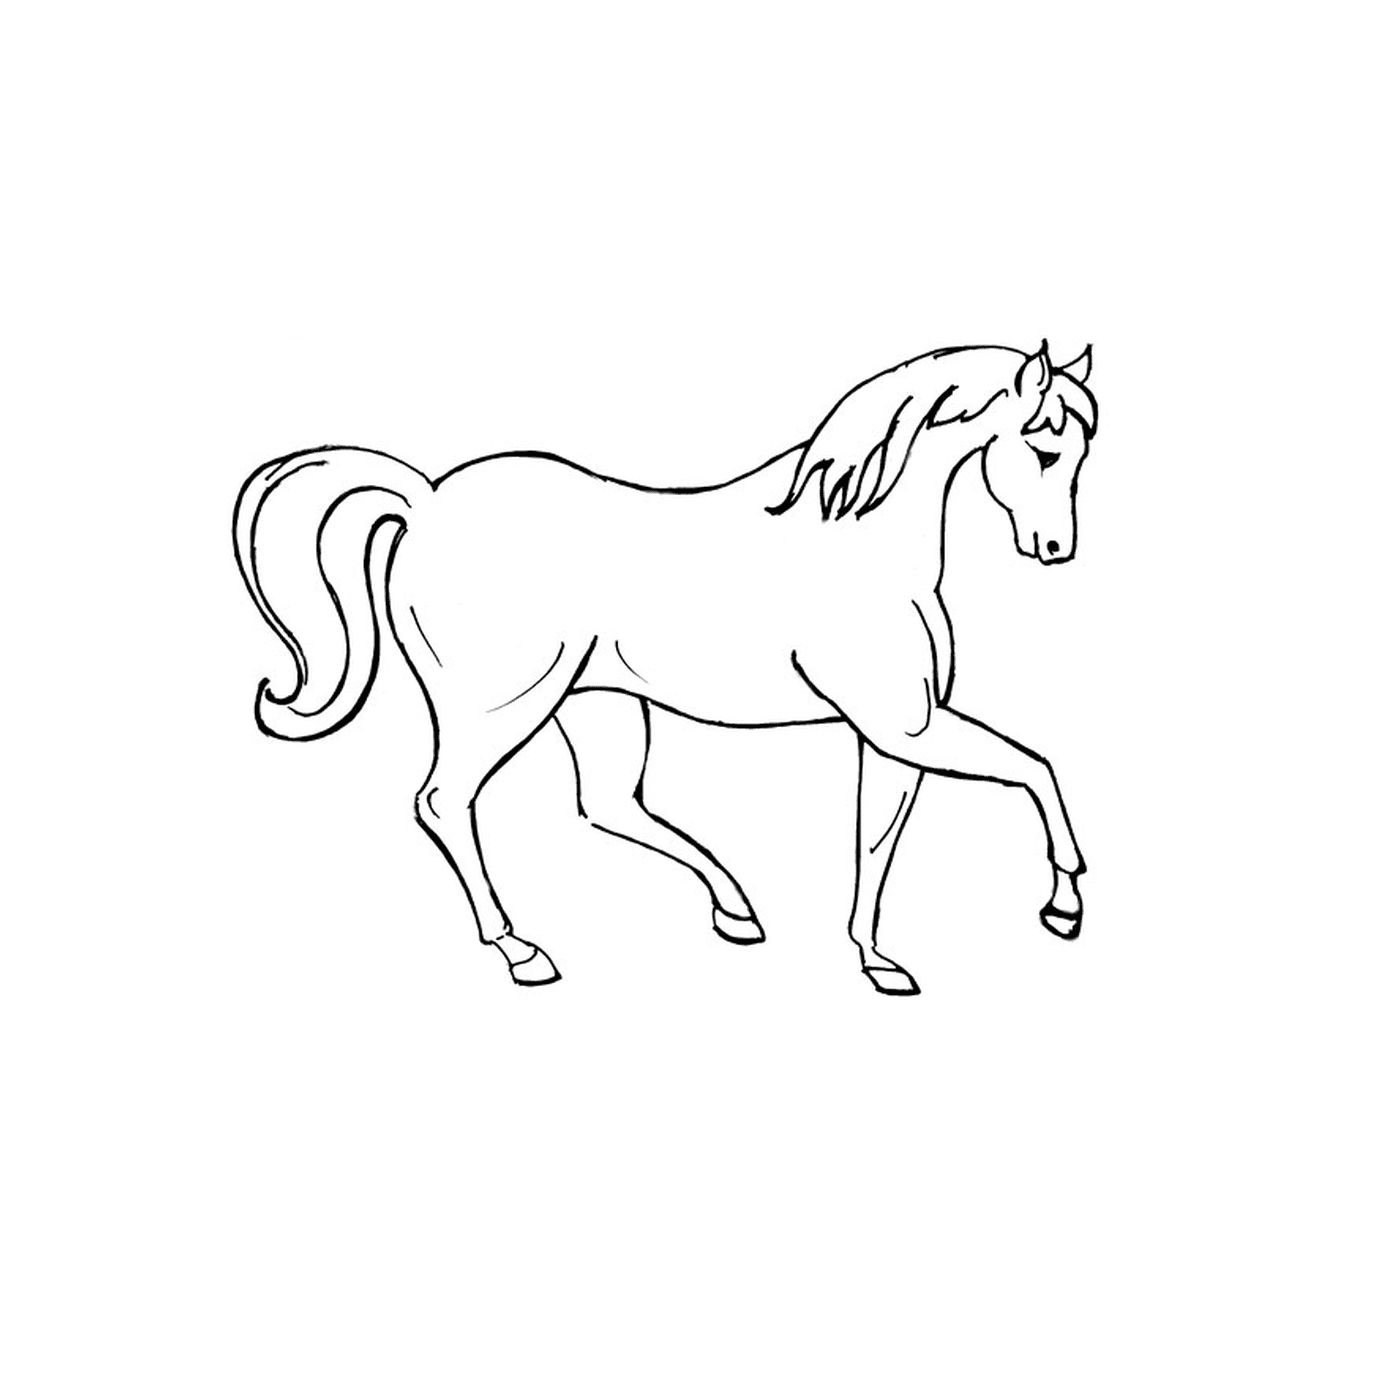  Brac horse - A white horse with long hair 